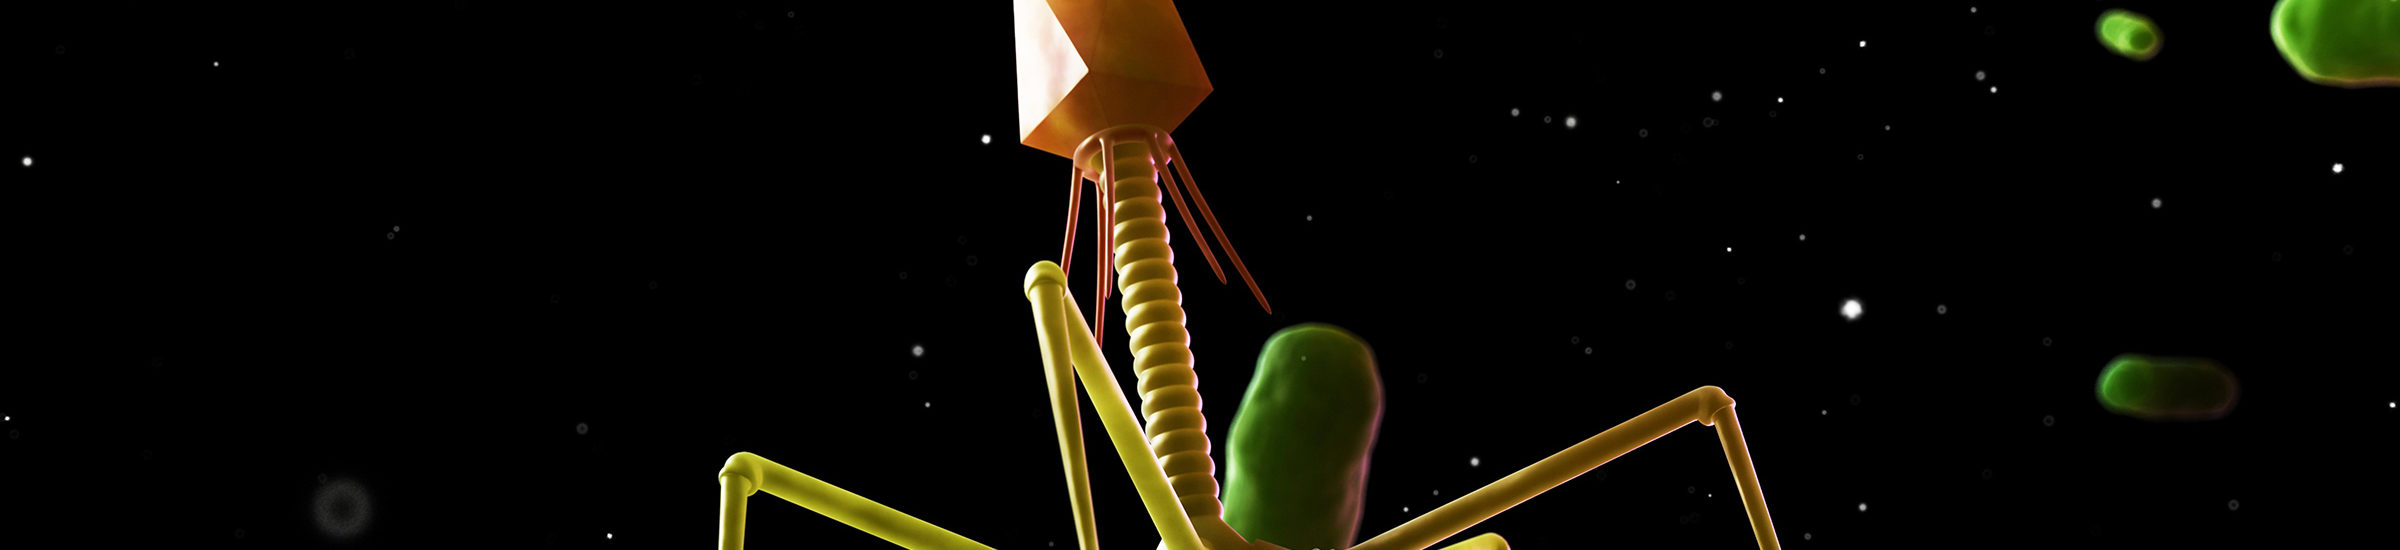 Bacteriophage, computer artwork.